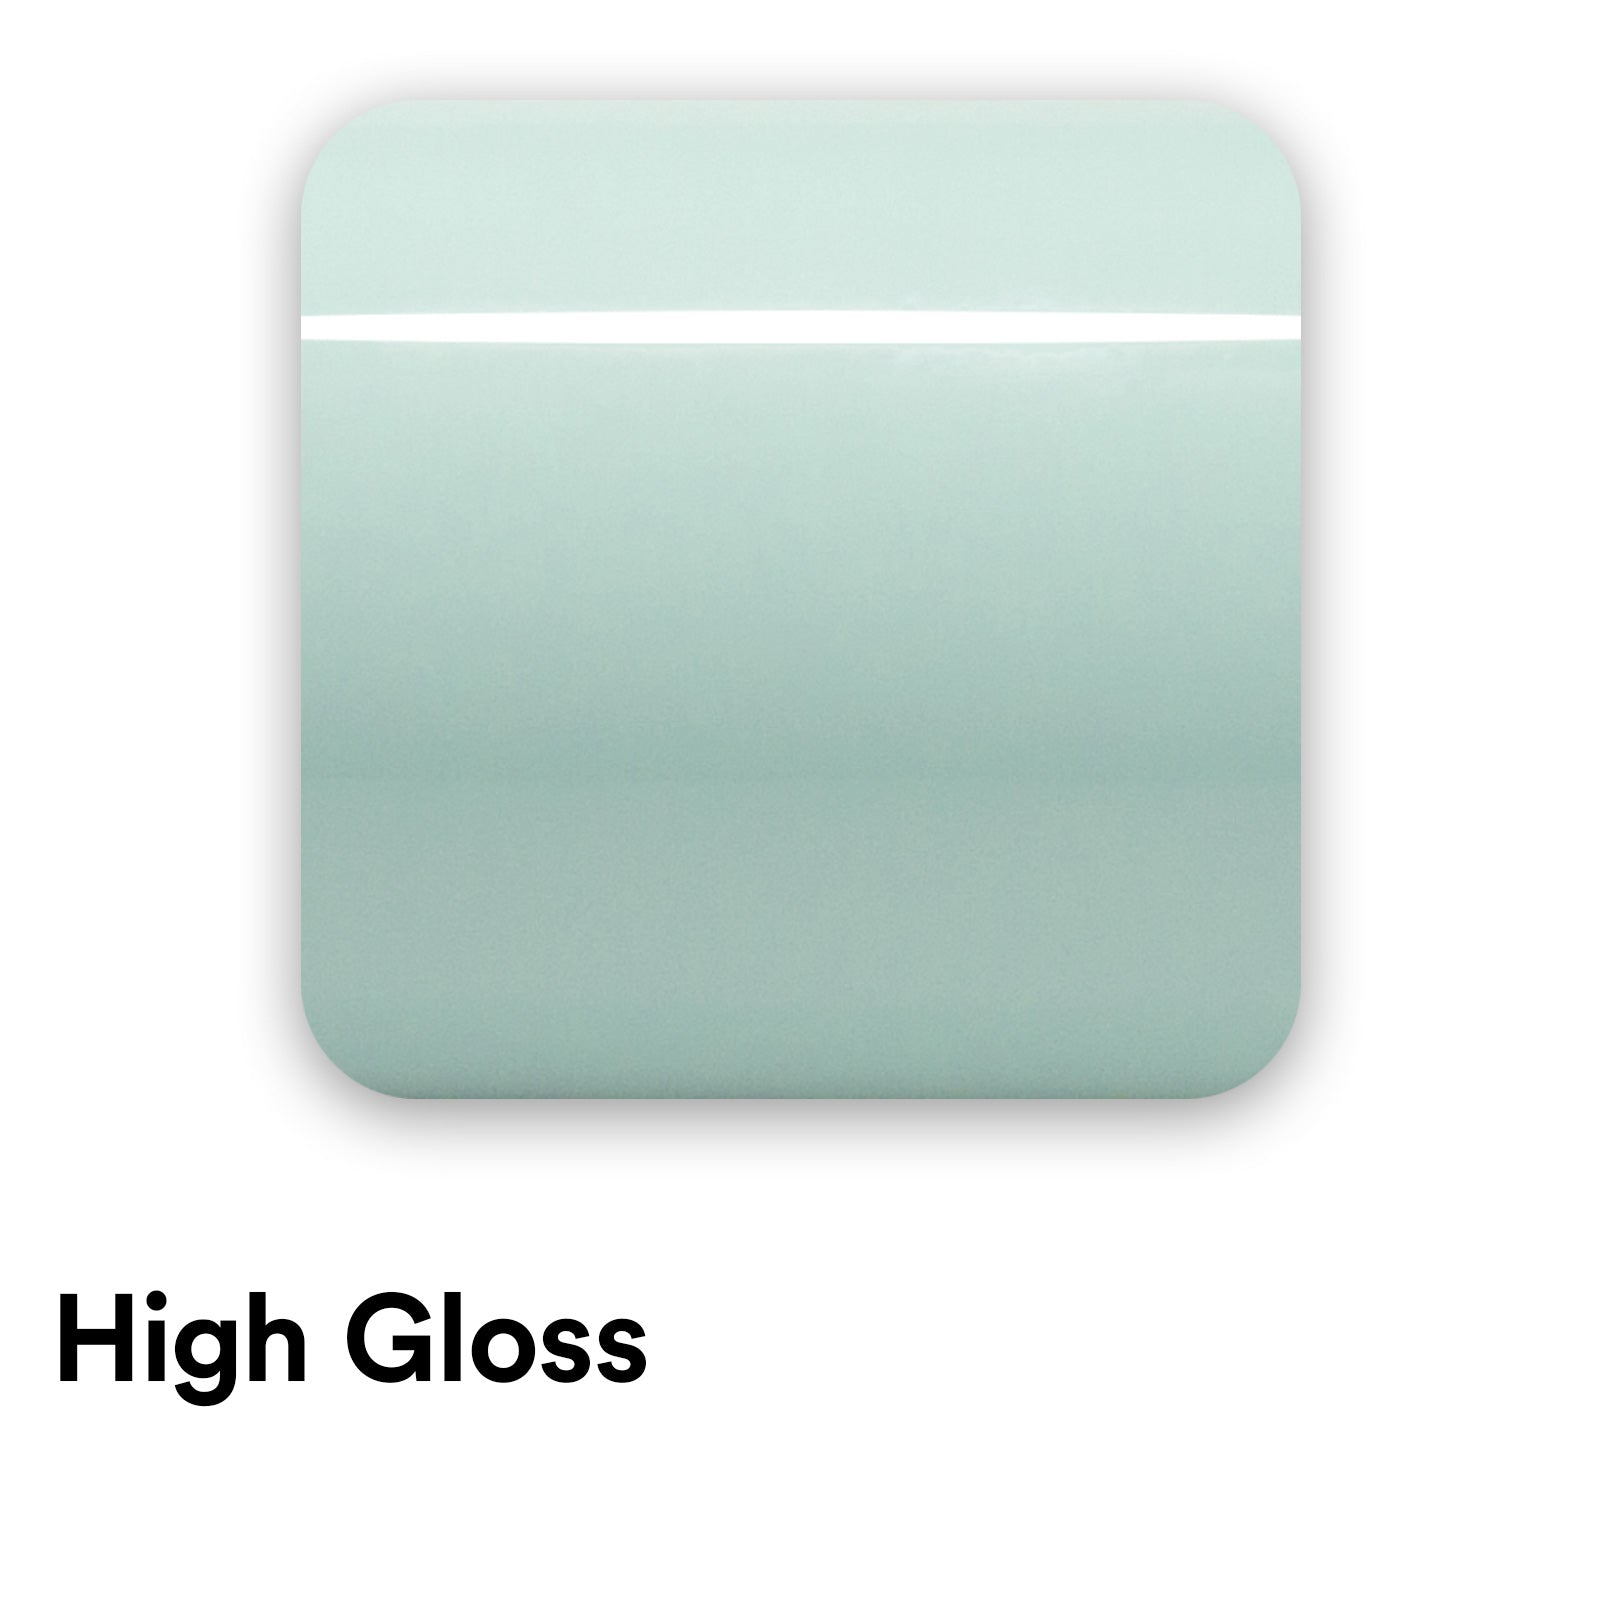 High Gloss Ocean Mist Teal Vinyl Wrap